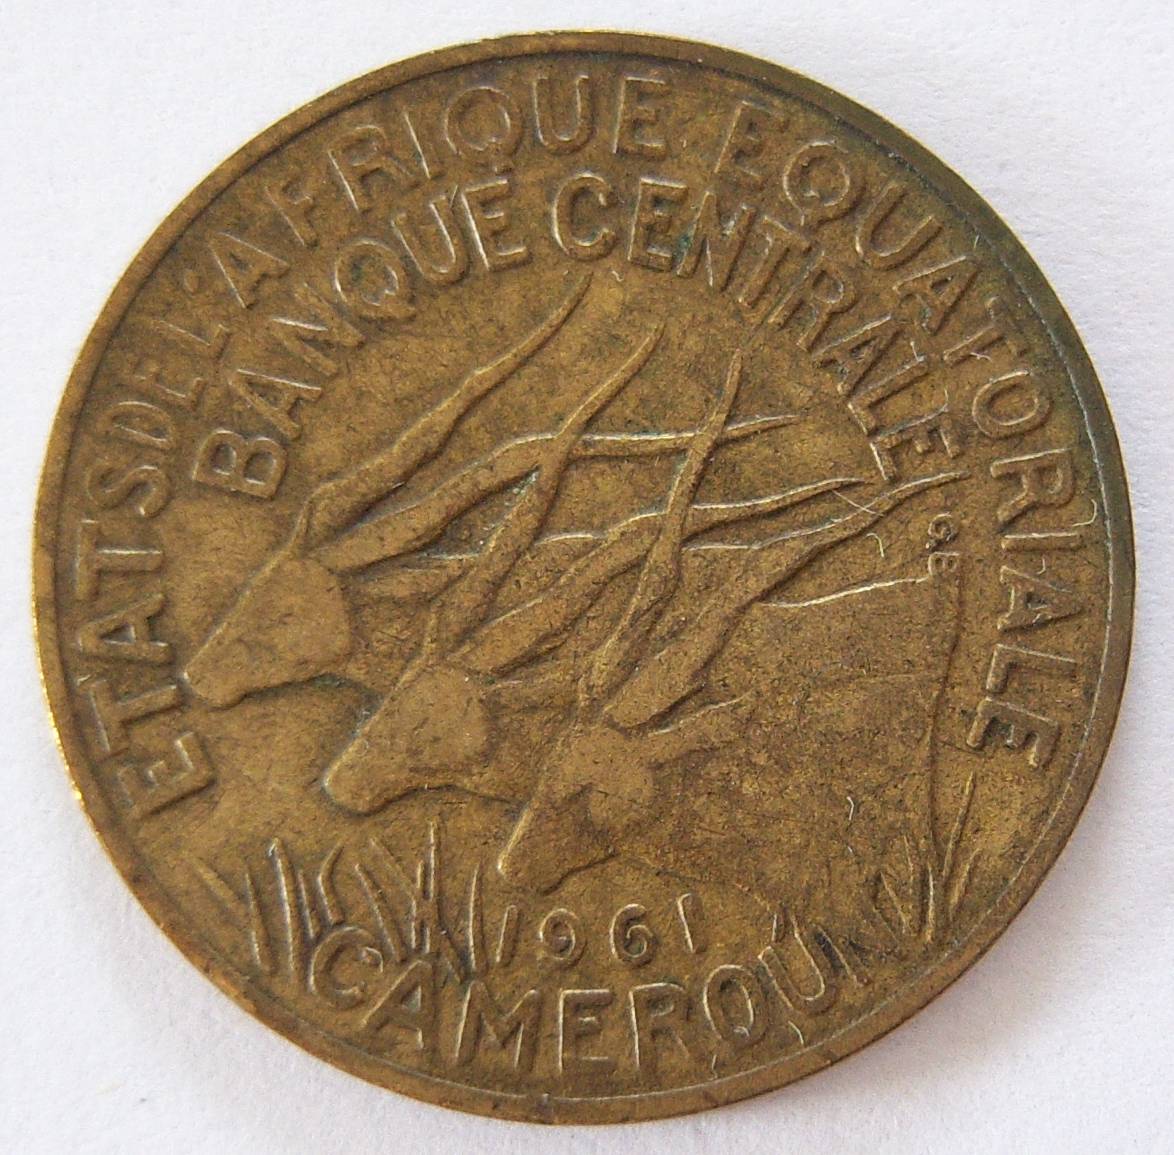  Kamerun 10 Francs 1961   